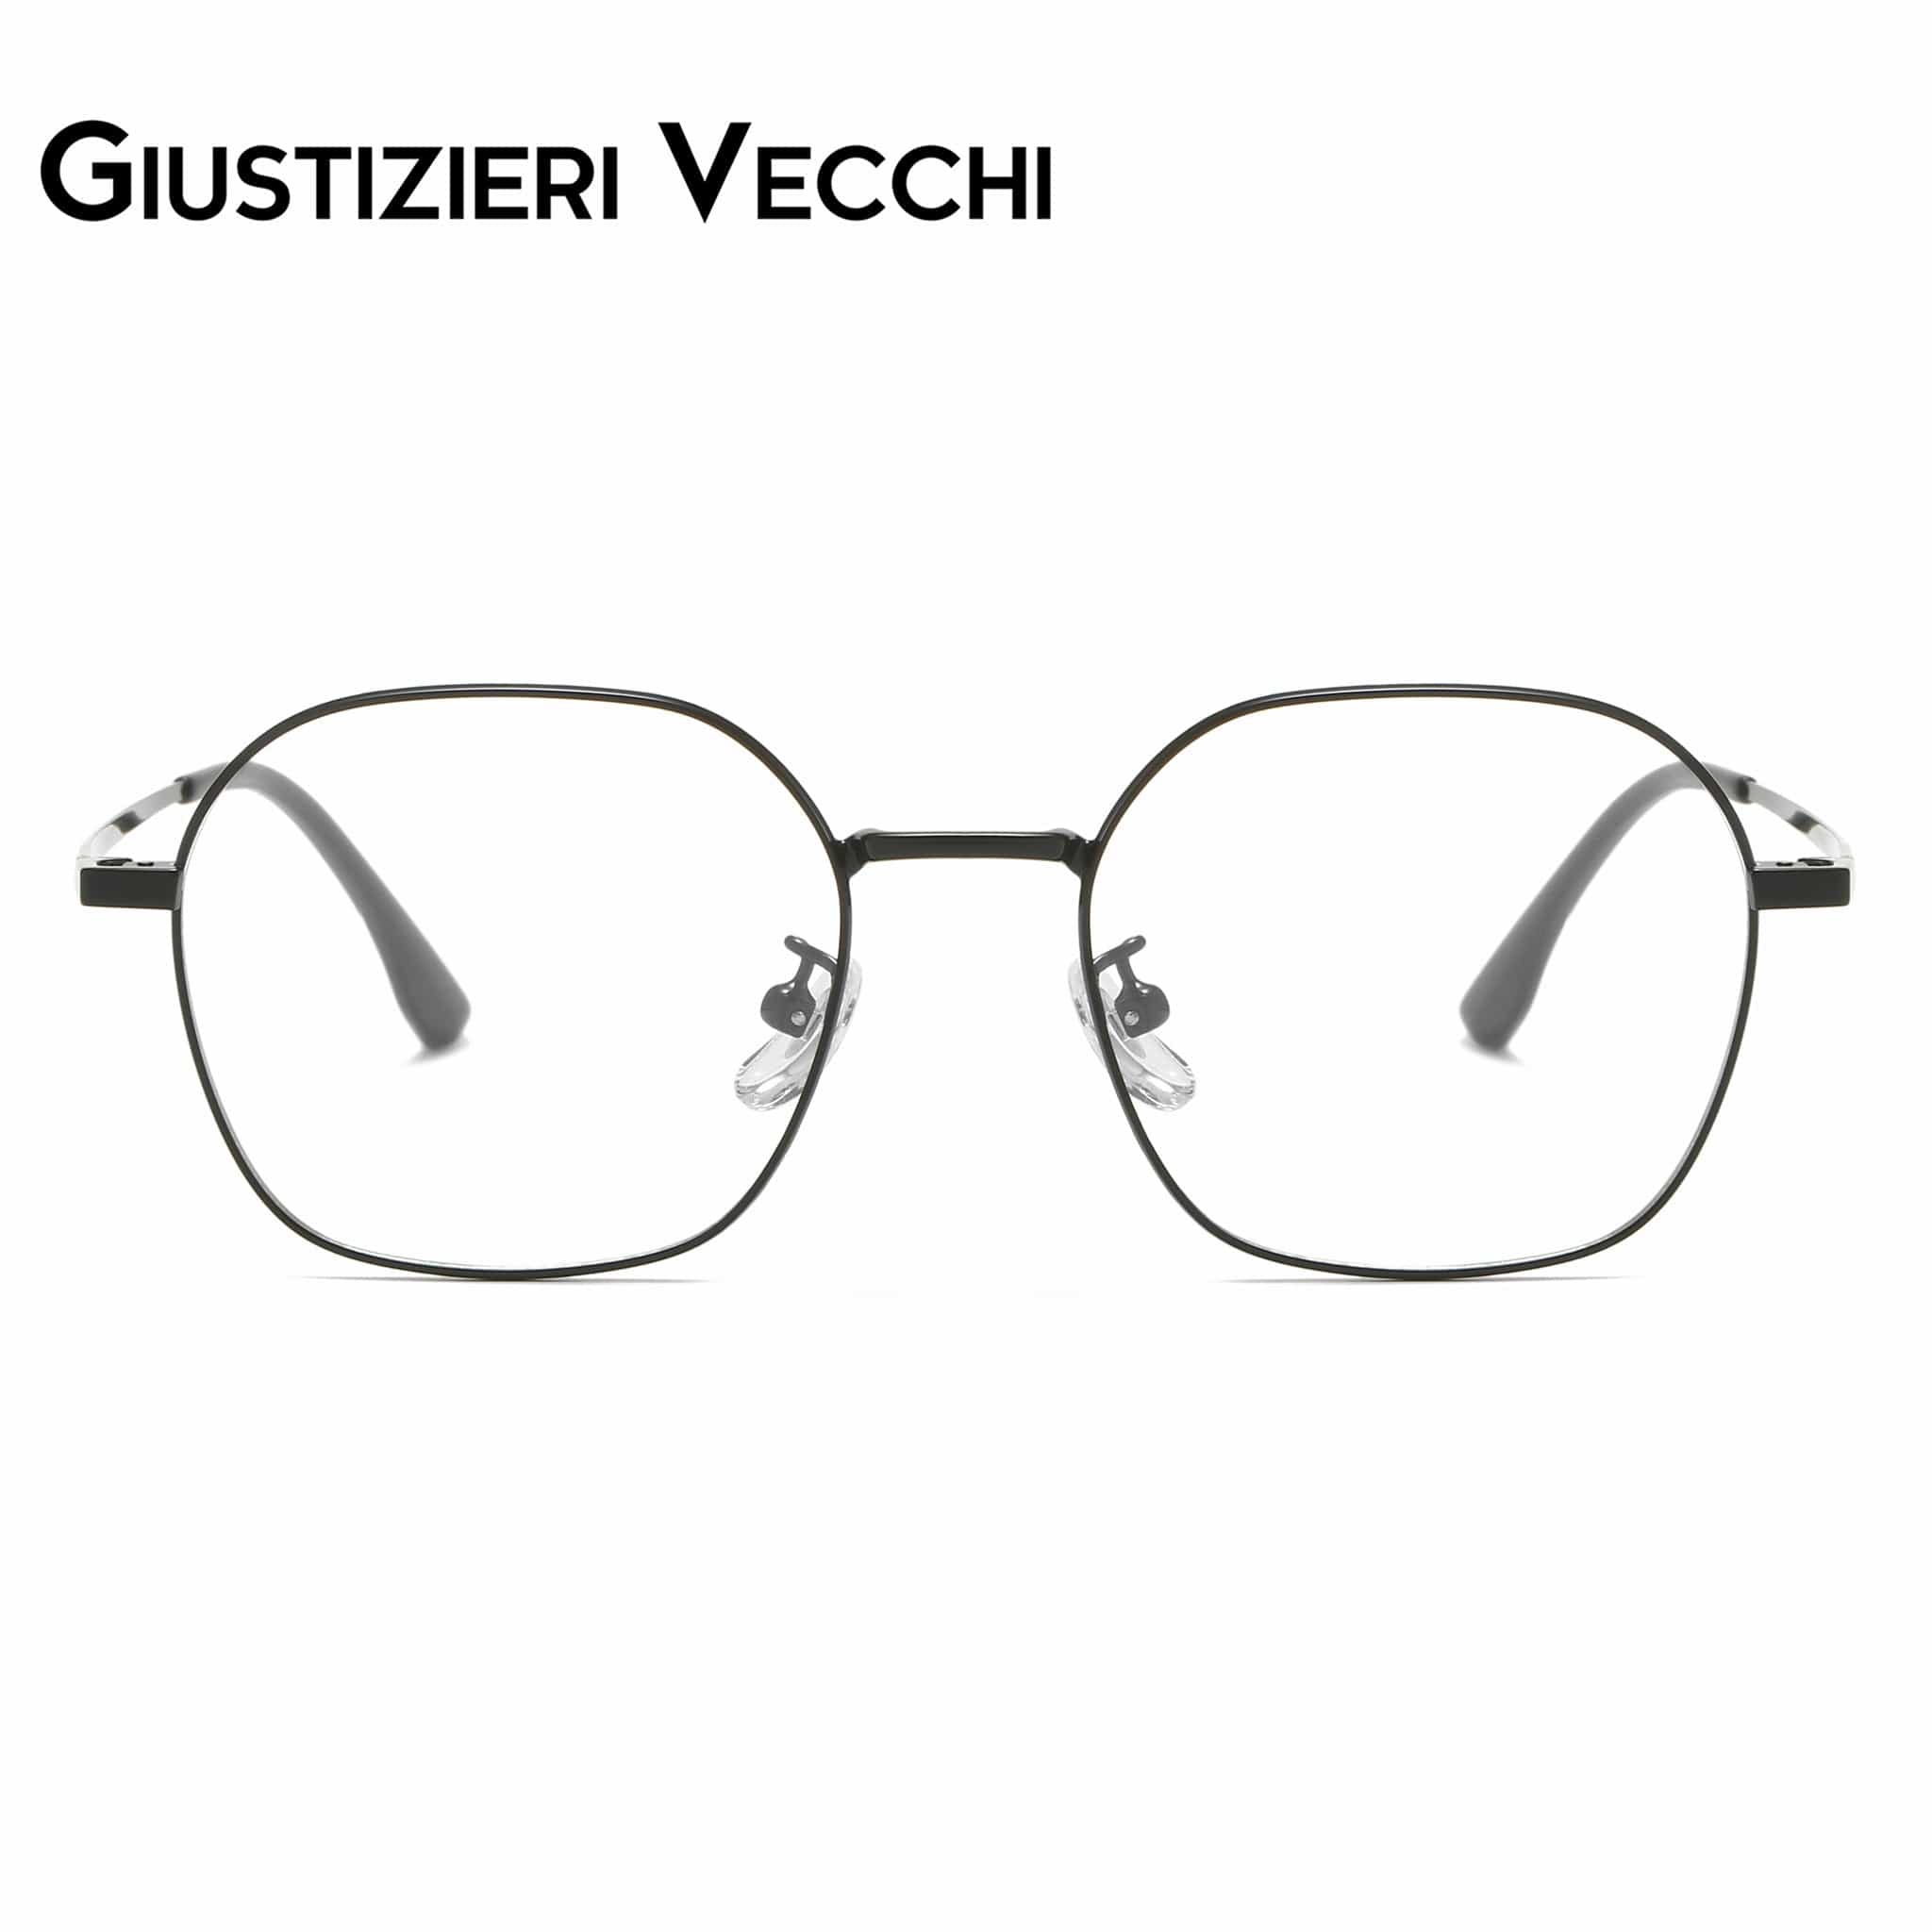 GIUSTIZIERI VECCHI Eyeglasses Black / Small Mystic Mist Uno